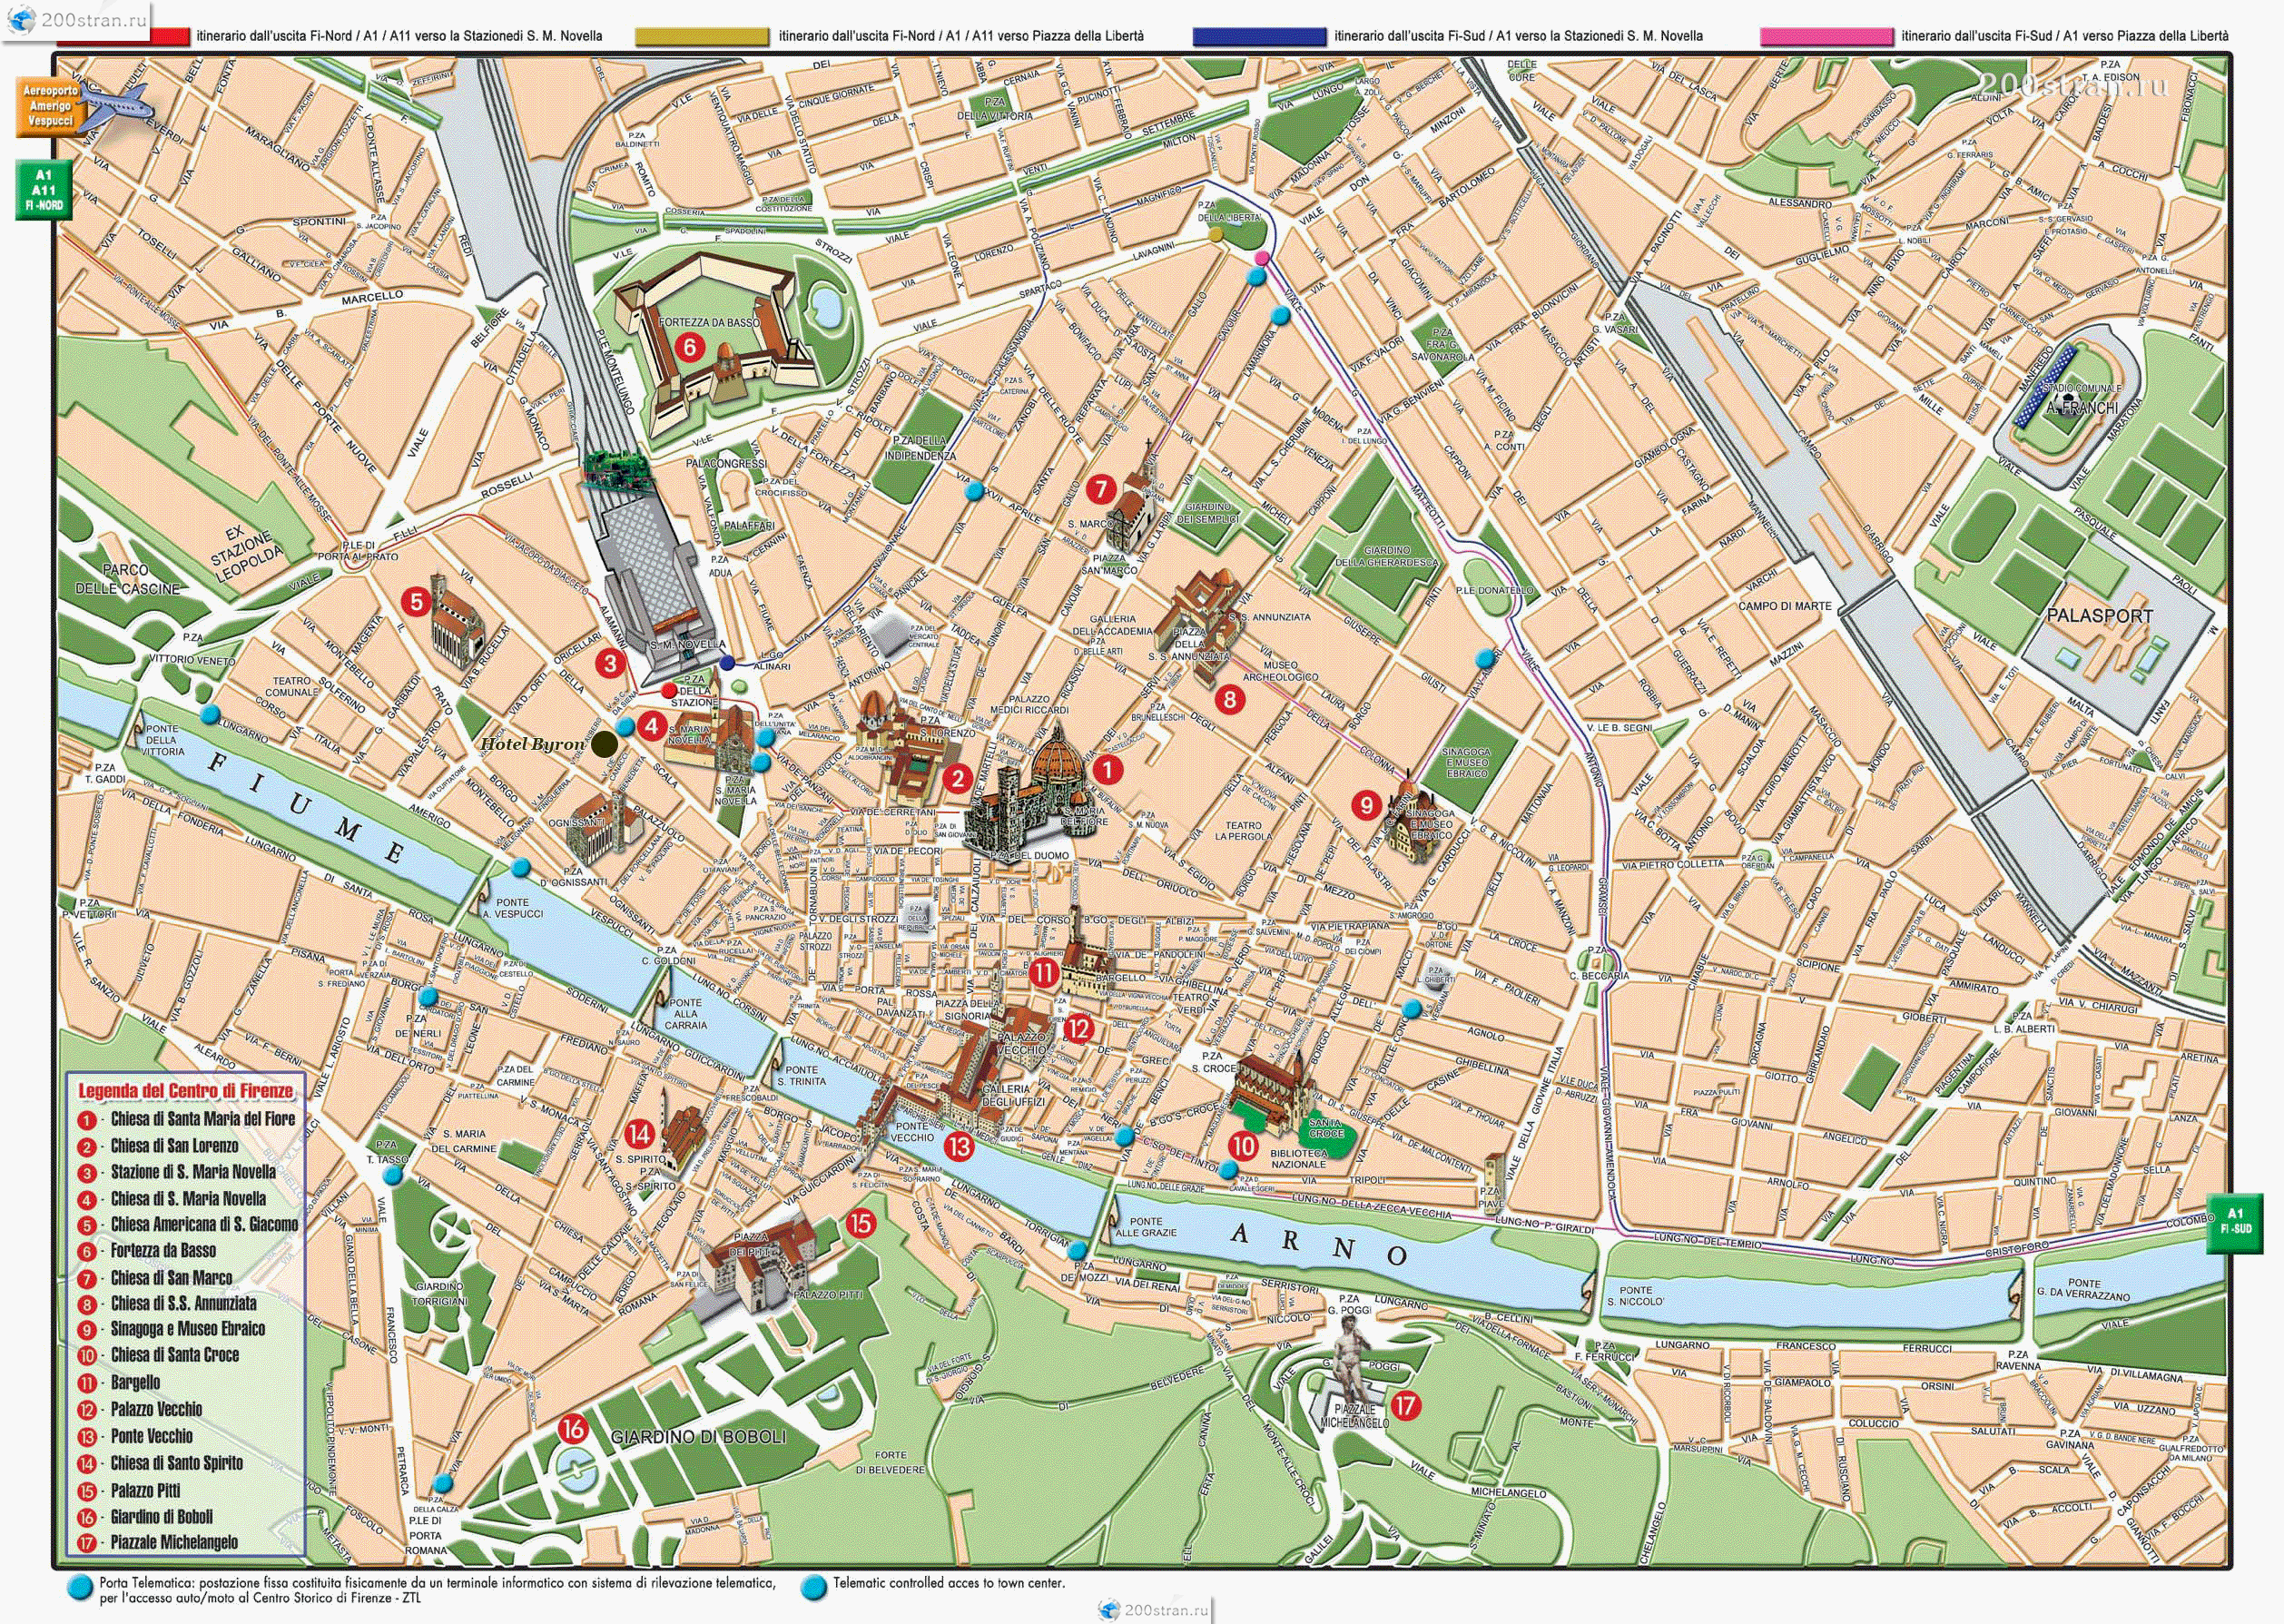 Подробная карта Флоренции | Detailed map of Florence